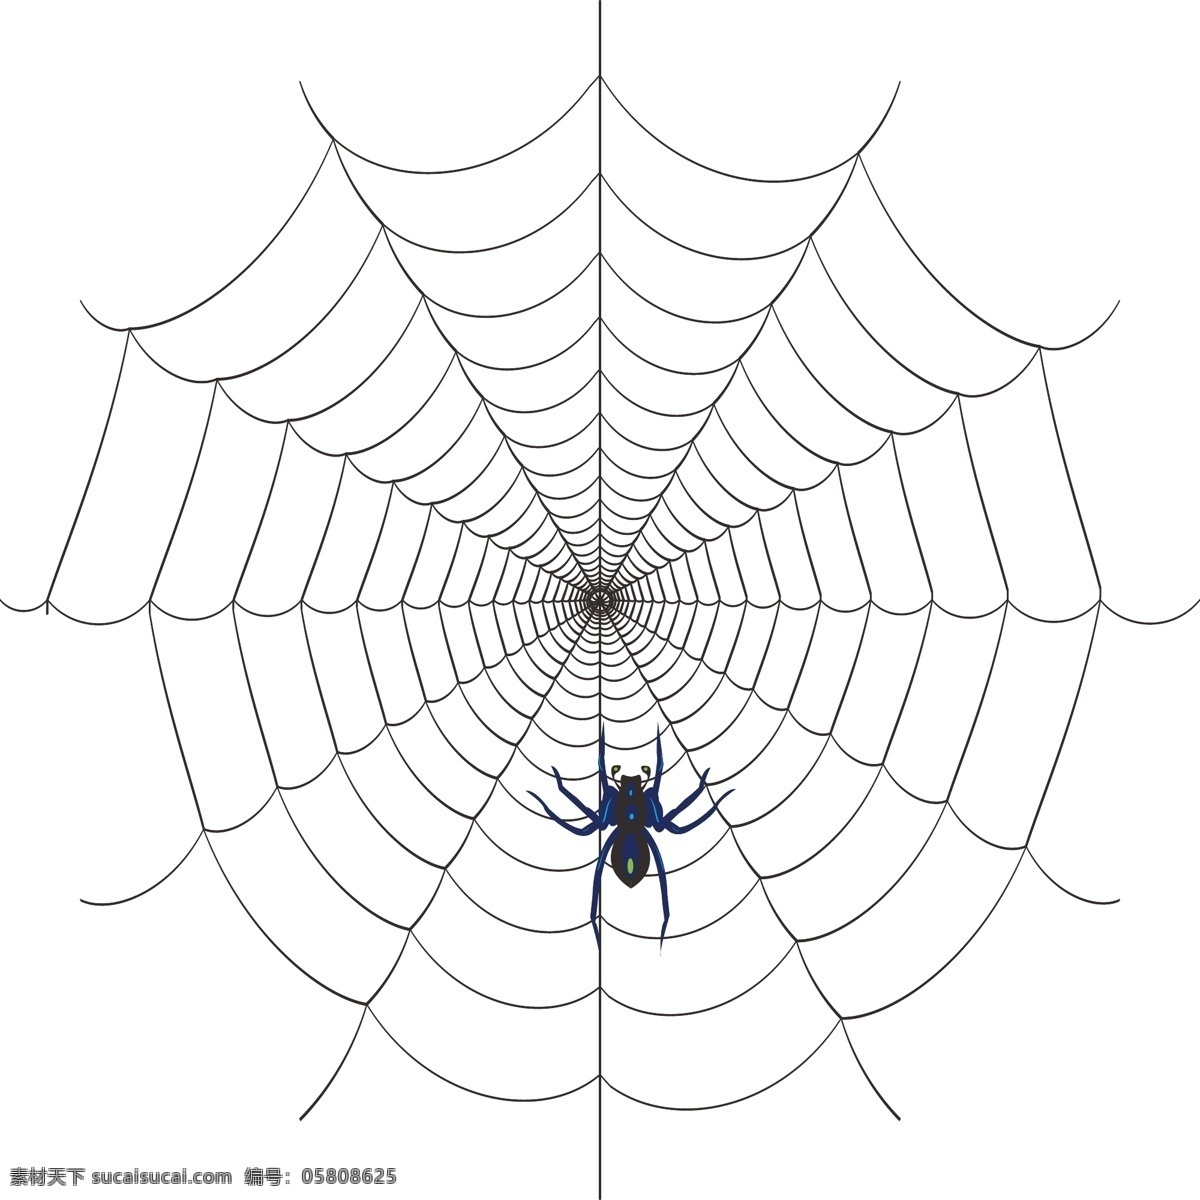 蜘蛛网 网格 蜘蛛 蜘蛛侠 爬行蜘蛛 其他生物 生物世界 矢量